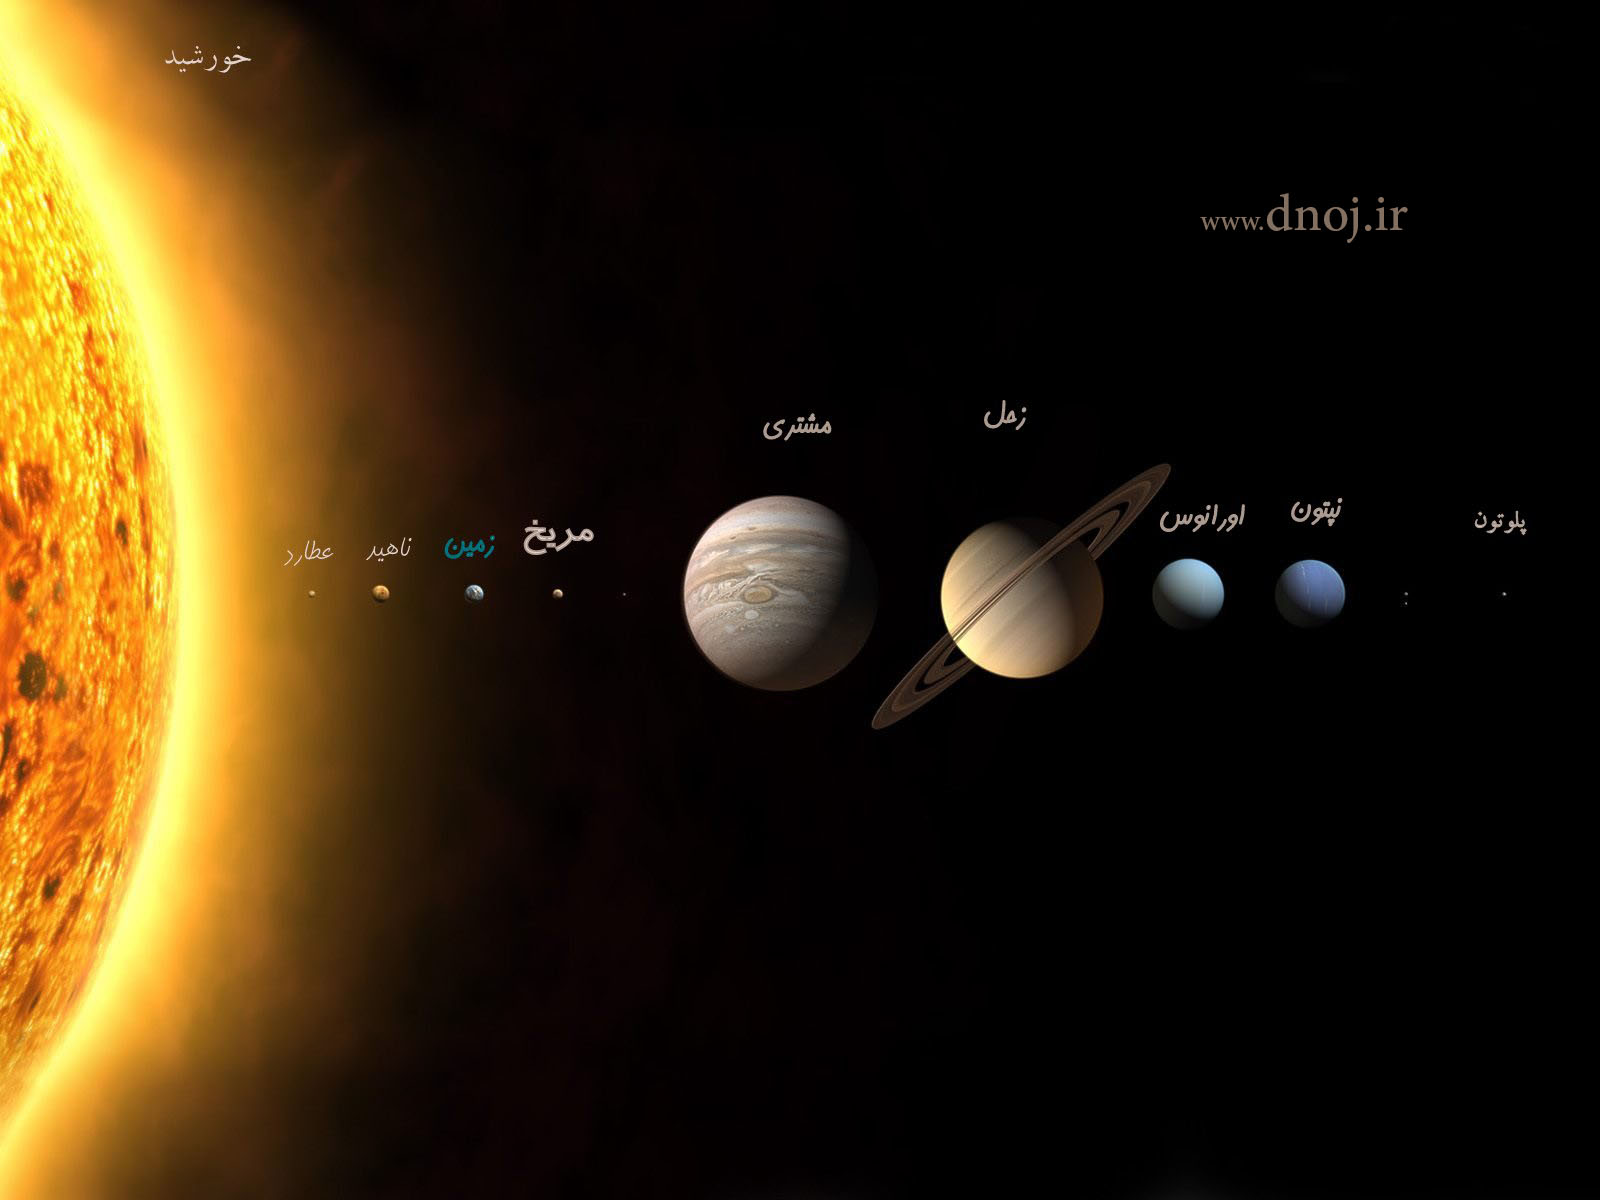 سیاره های منظومه شمسی به ترتیب